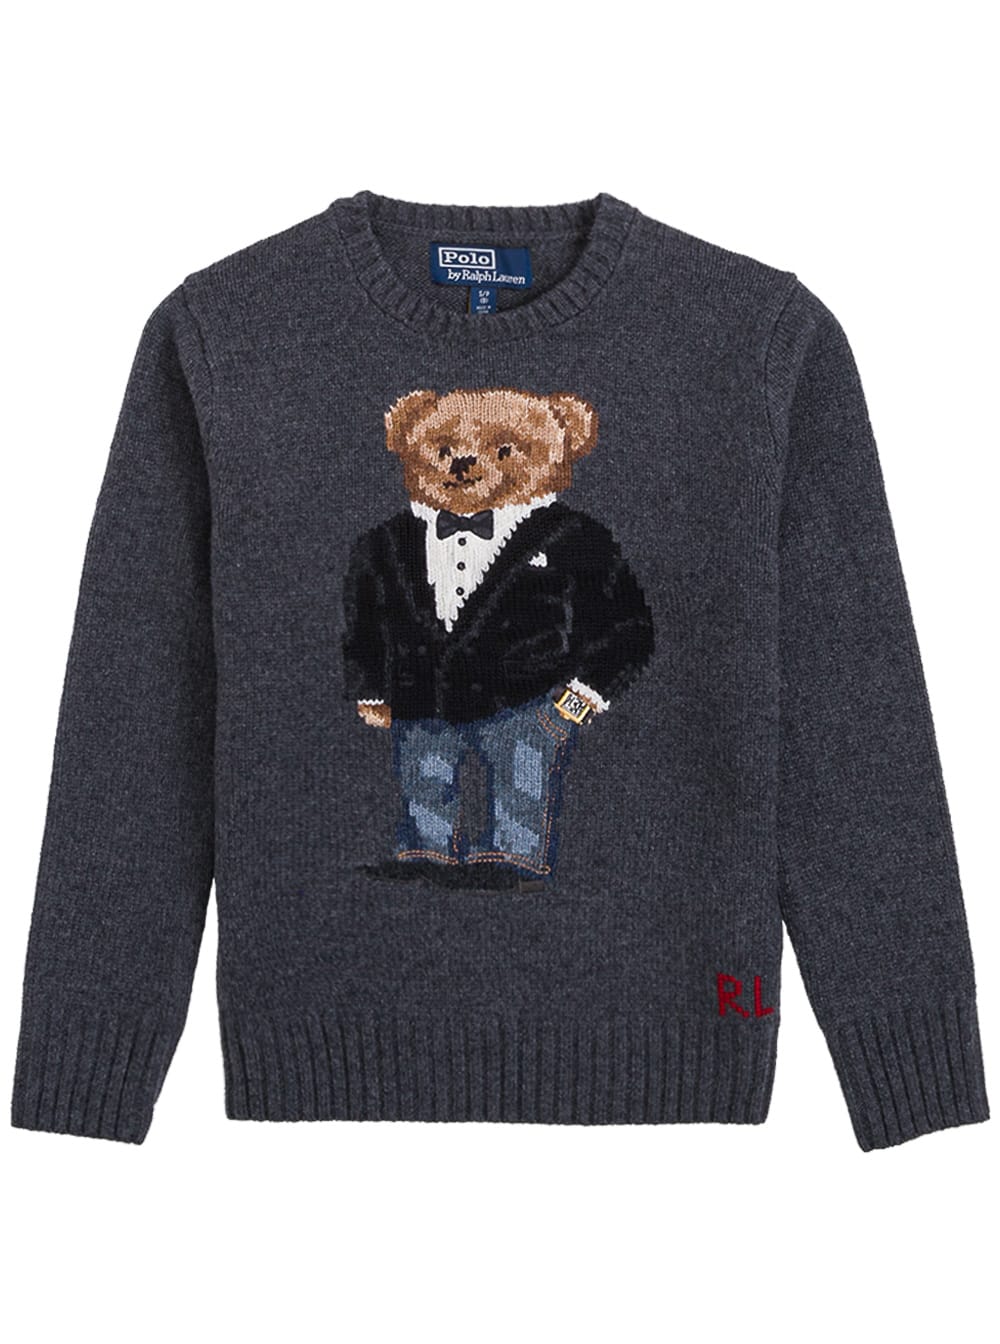 Polo Ralph Lauren Grey Wool Blend Sweater With Bear Logo